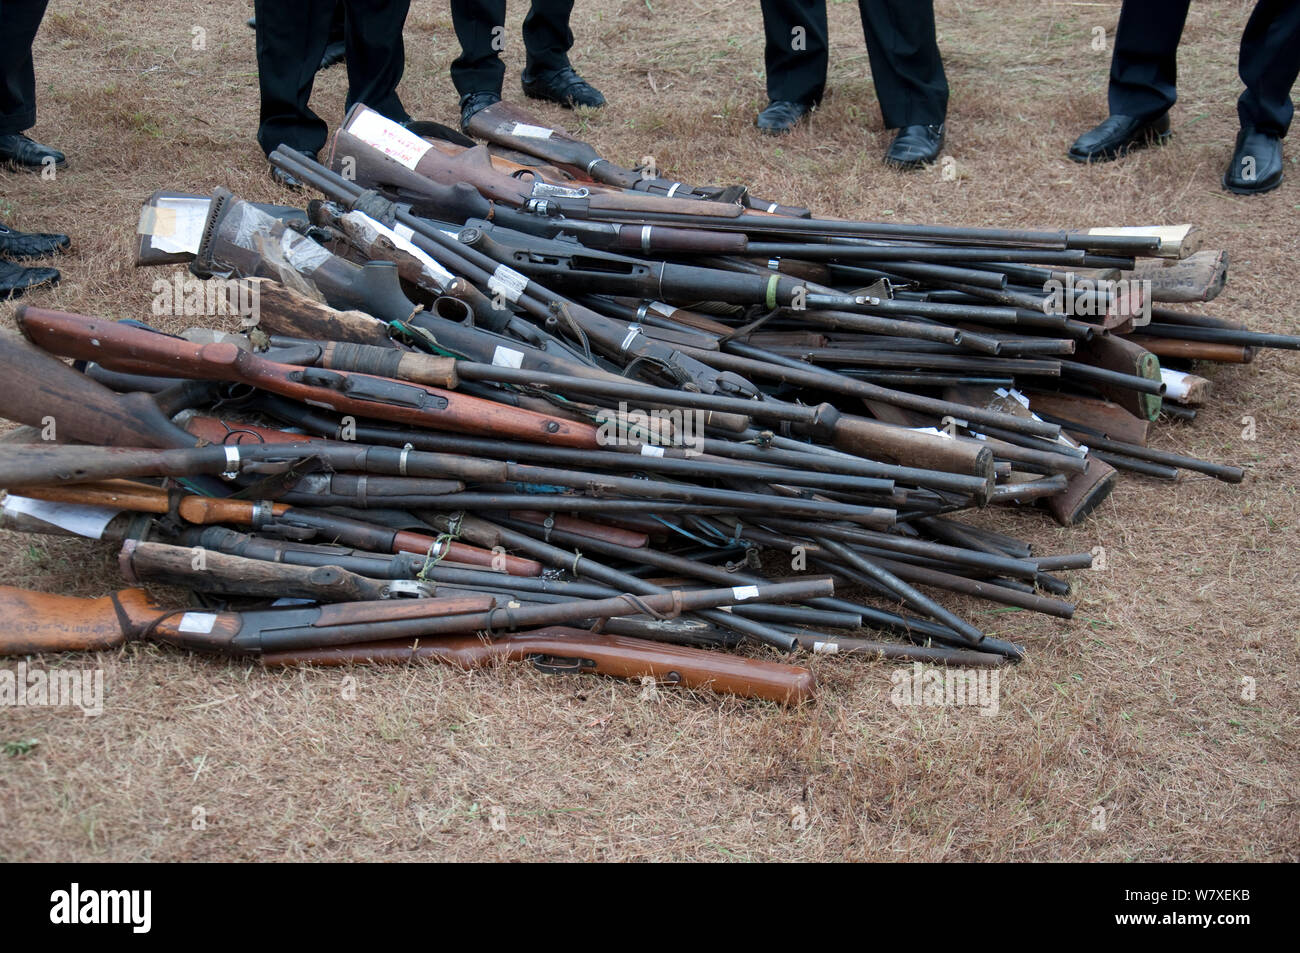 Beschlagnahmten Gewehren von Wilderern, etwa während der Regierung Côte d'Ivoire verbrannt zu brennen, Libreville, Gabun, 6. Juni 2012. Stockfoto